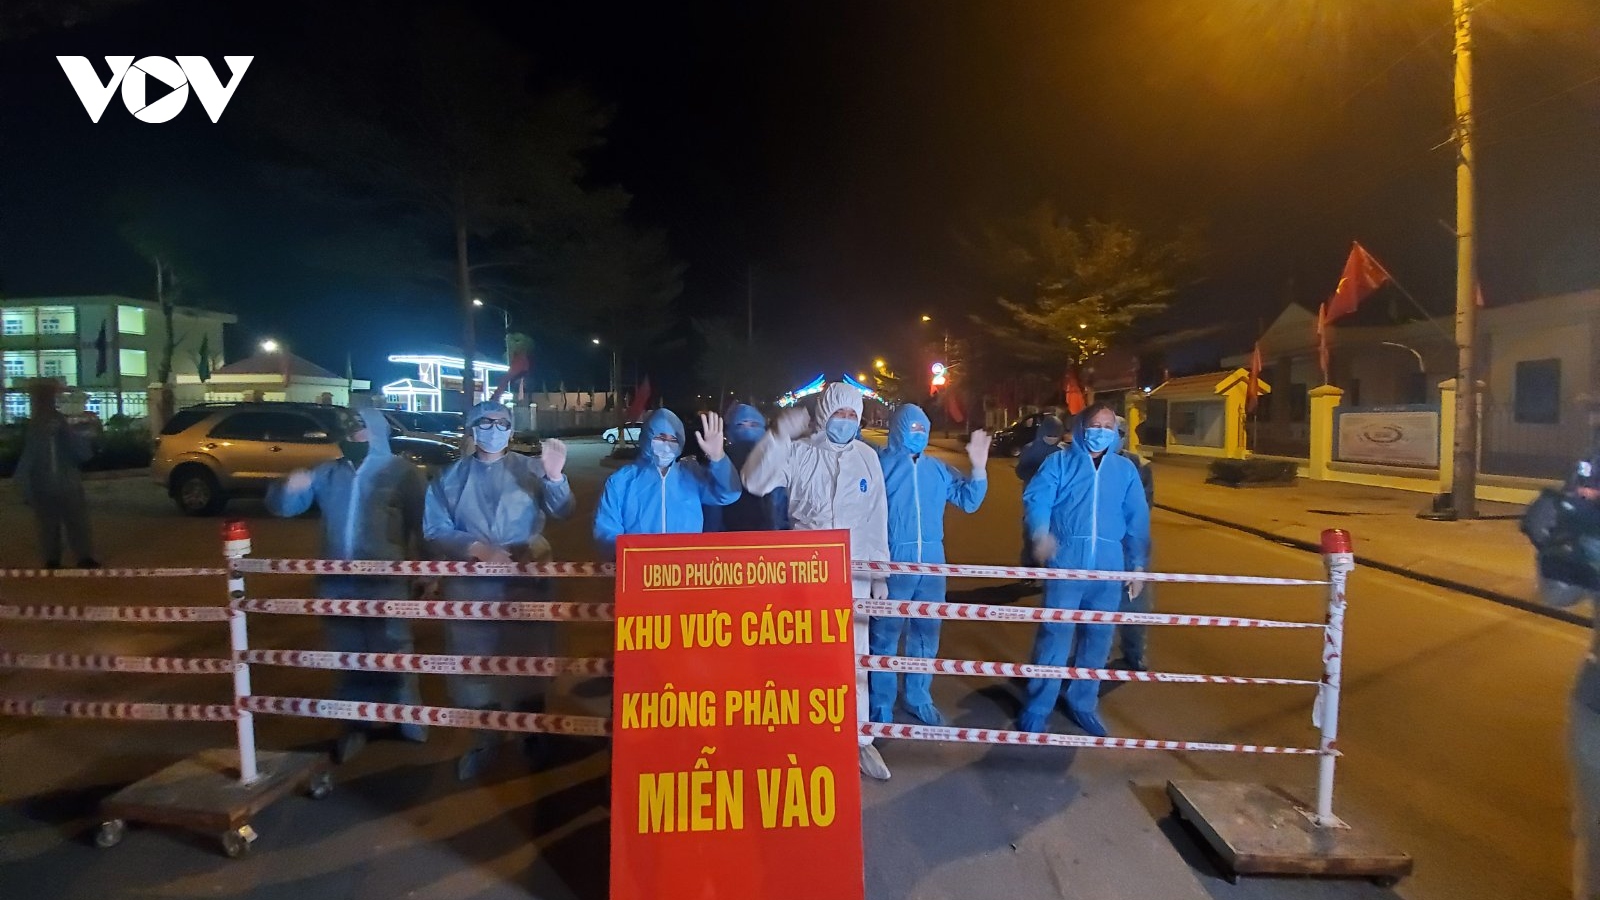 Phó Thủ tướng Vũ Đức Đam thị sát công tác phòng chống dịch ở Hải Dương và Quảng Ninh